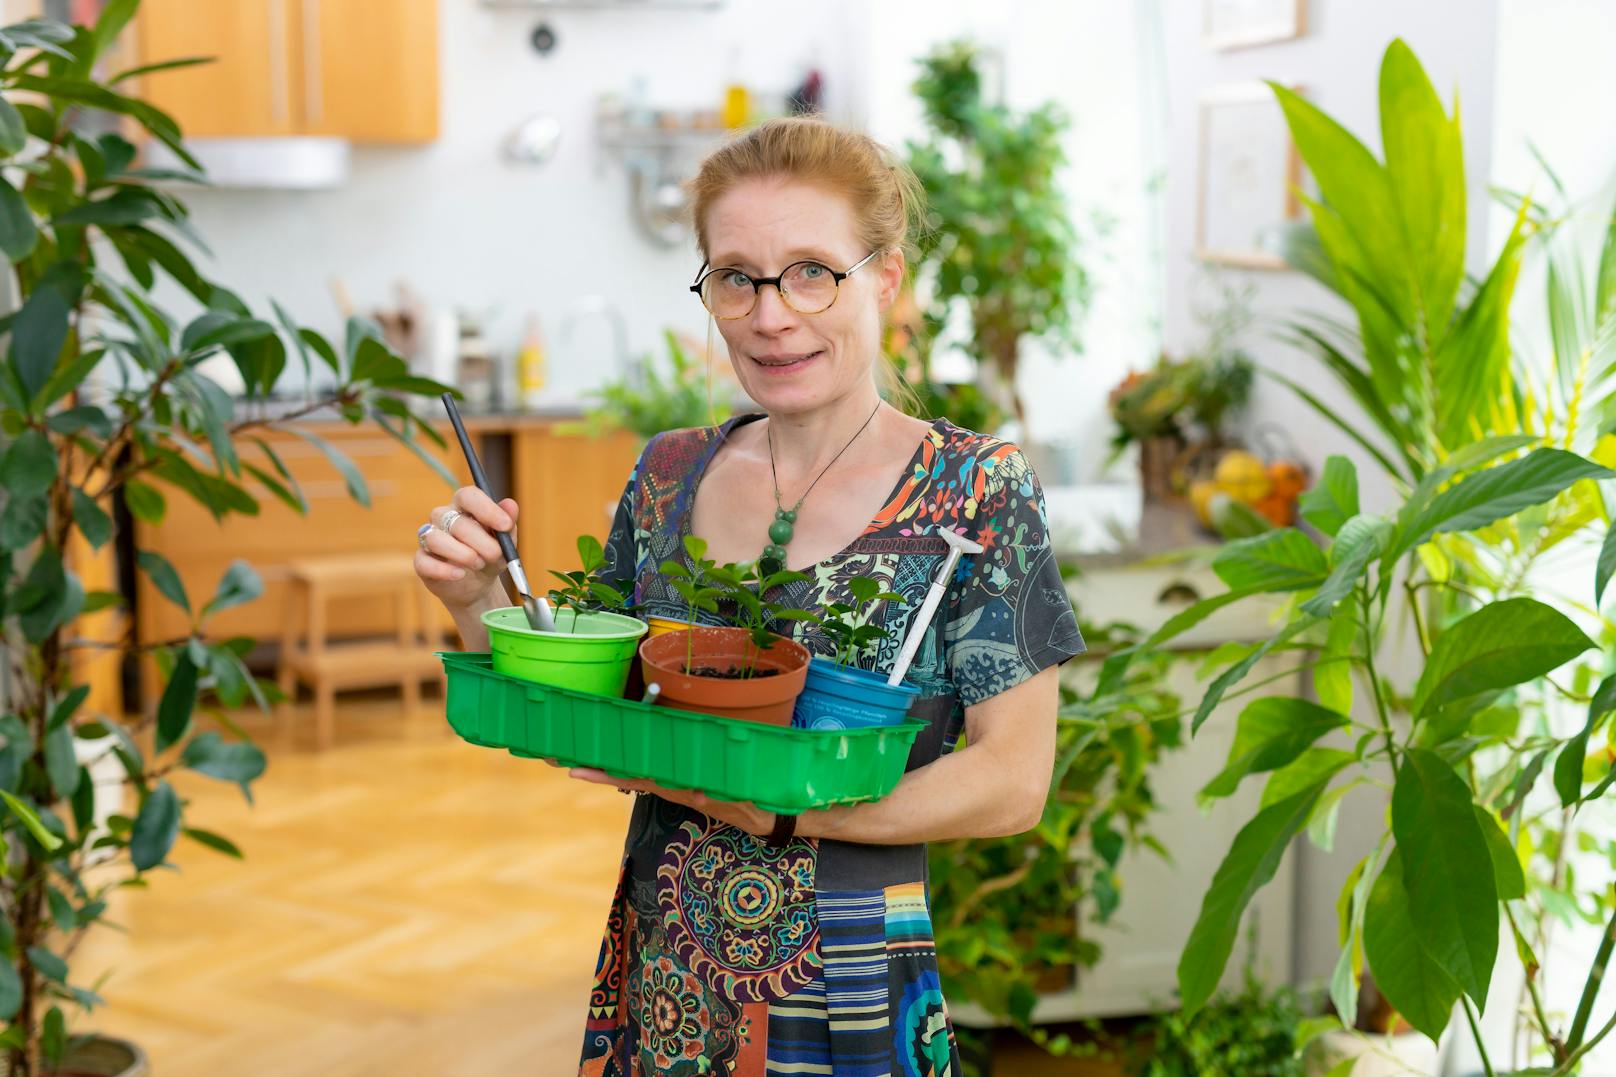 Katy Schmidt bekam beim &nbsp;Fotowettbewerb der Stadt Wien 'Blühendes Zuhause' die blumige Auszeichnung in der neuen Kategorie "Indoor-Garten" für ihren Indoor-Dschungel in ihrer Wohnung in der Leopoldstadt.